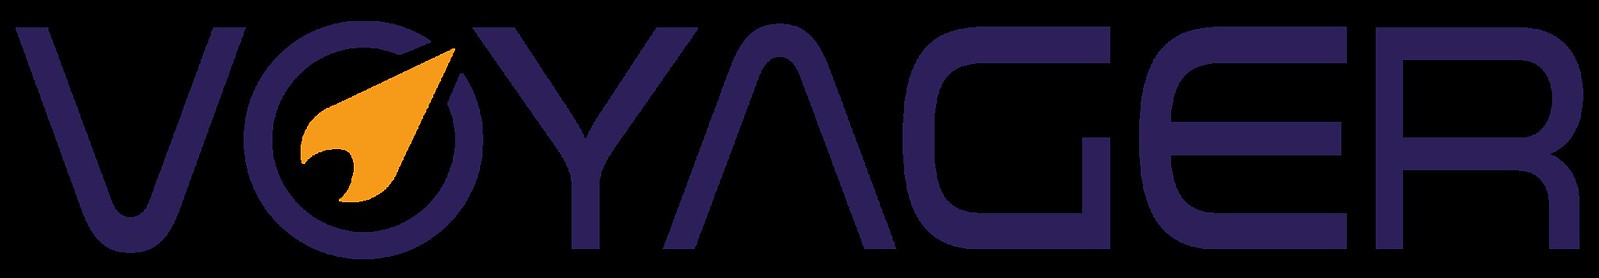 Voyager Logo